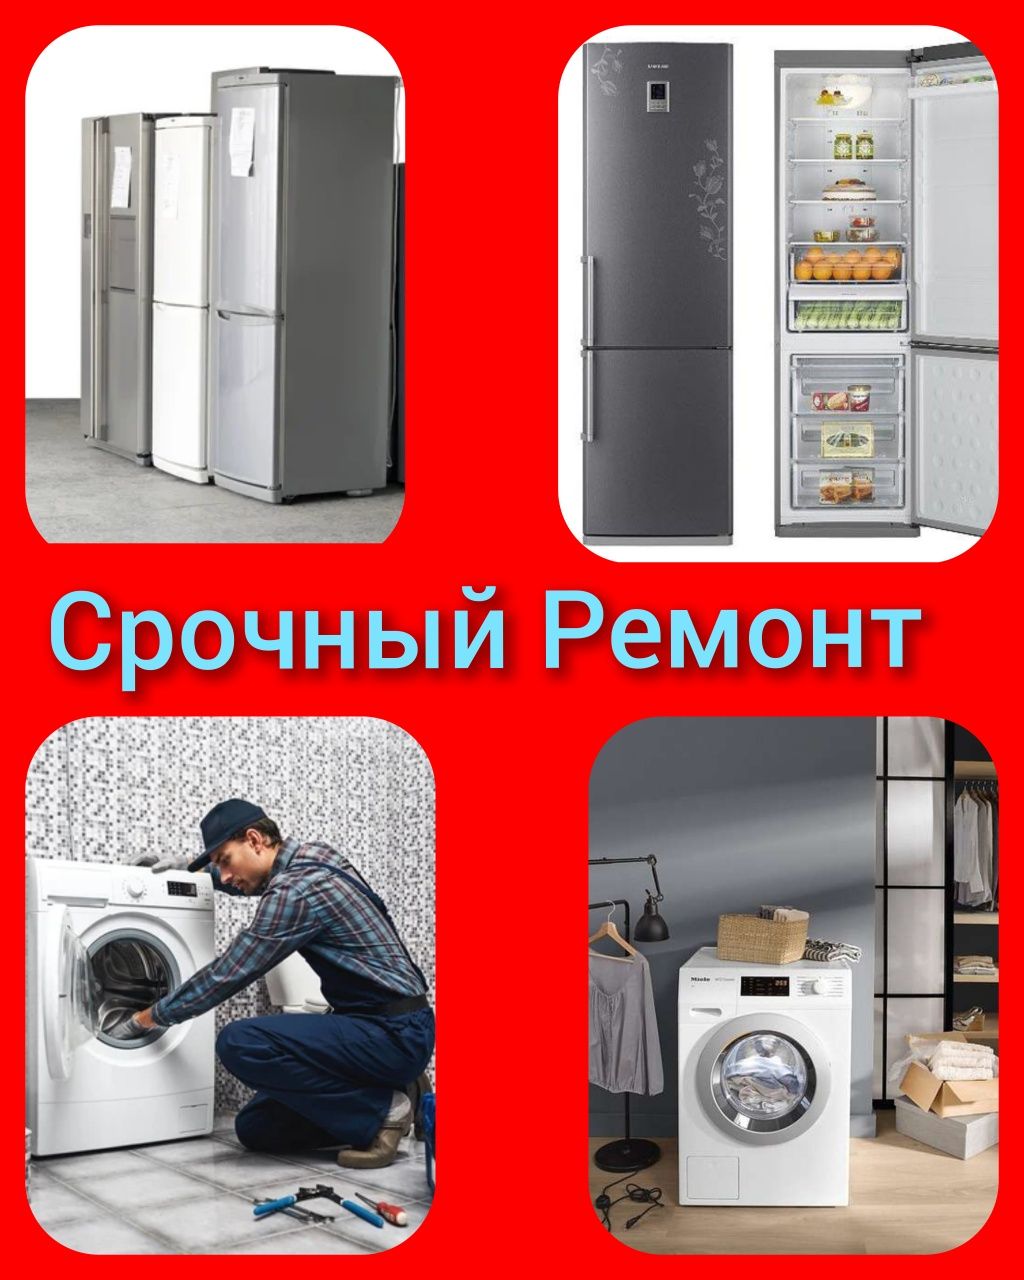 Срочный Ремонт Холодильников и стиральных машин АВТОМАТ